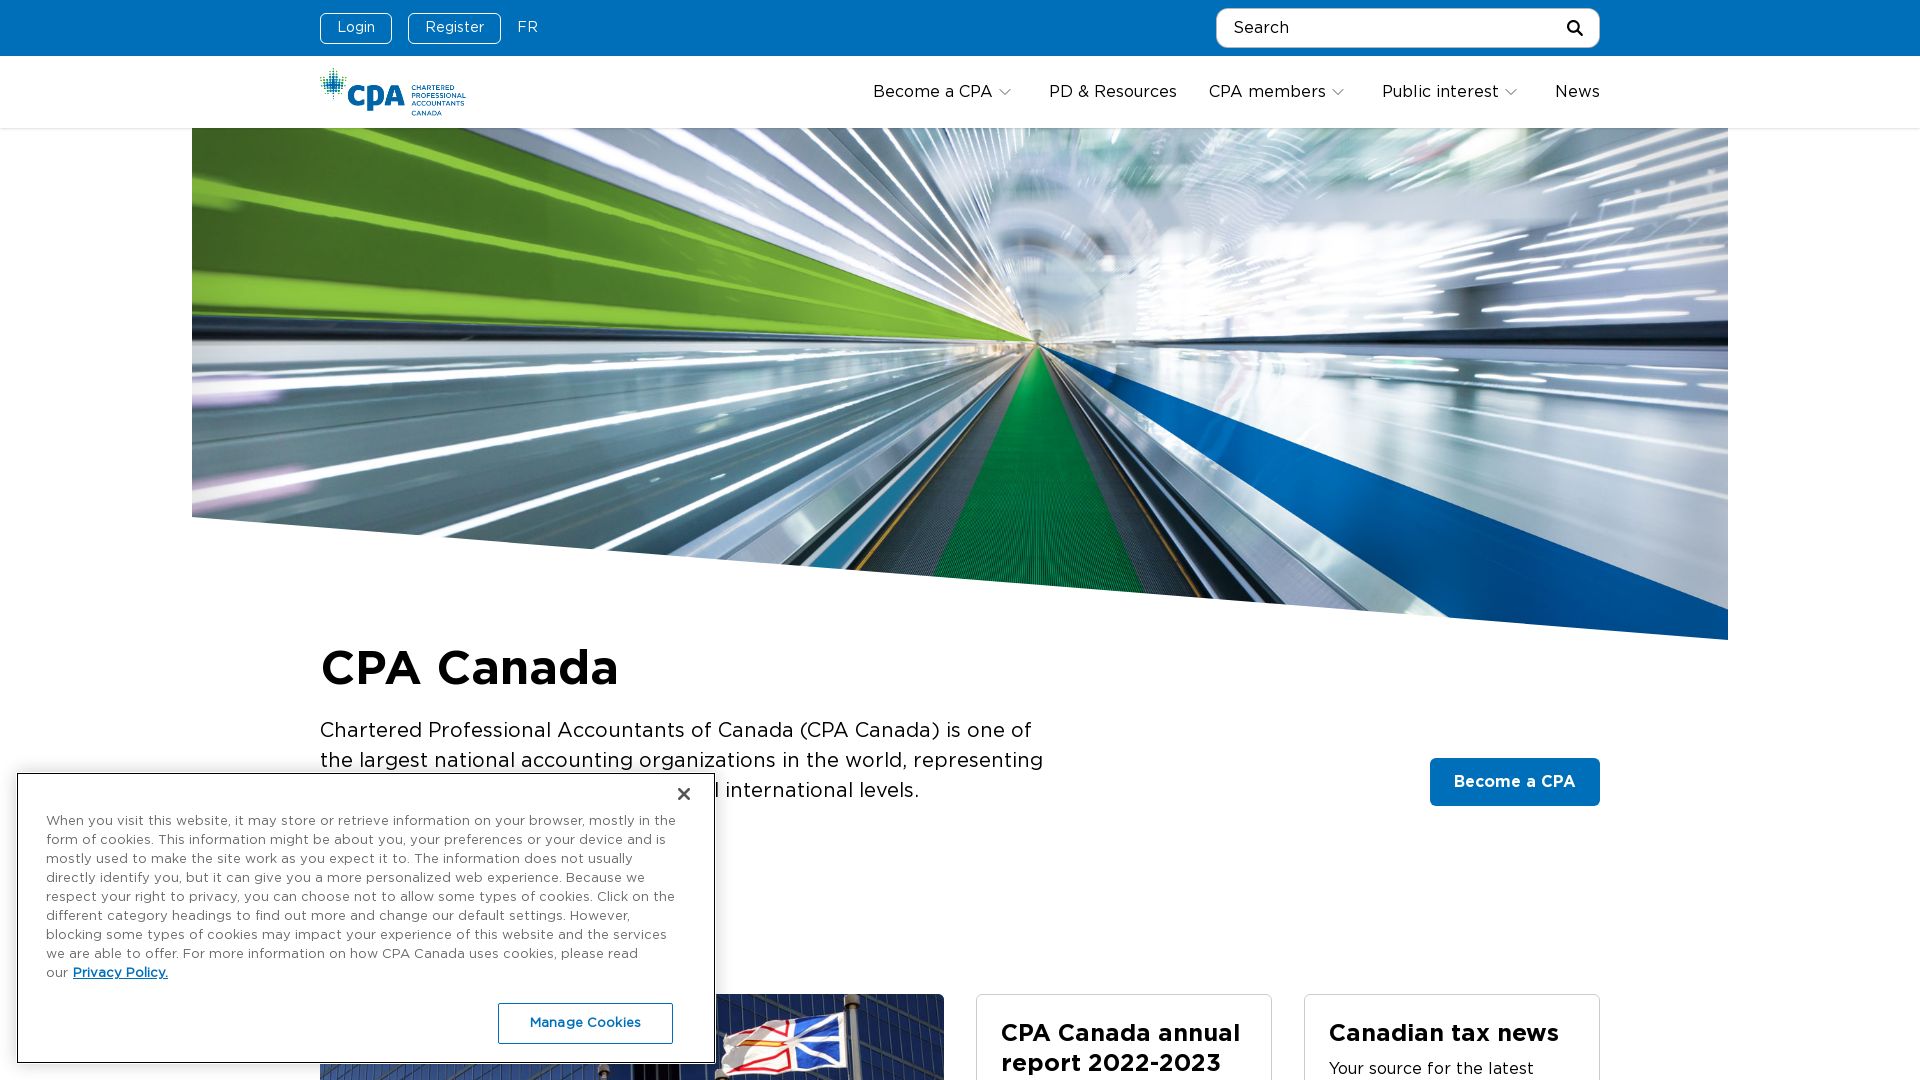 Website status cpacanada.ca is   ONLINE